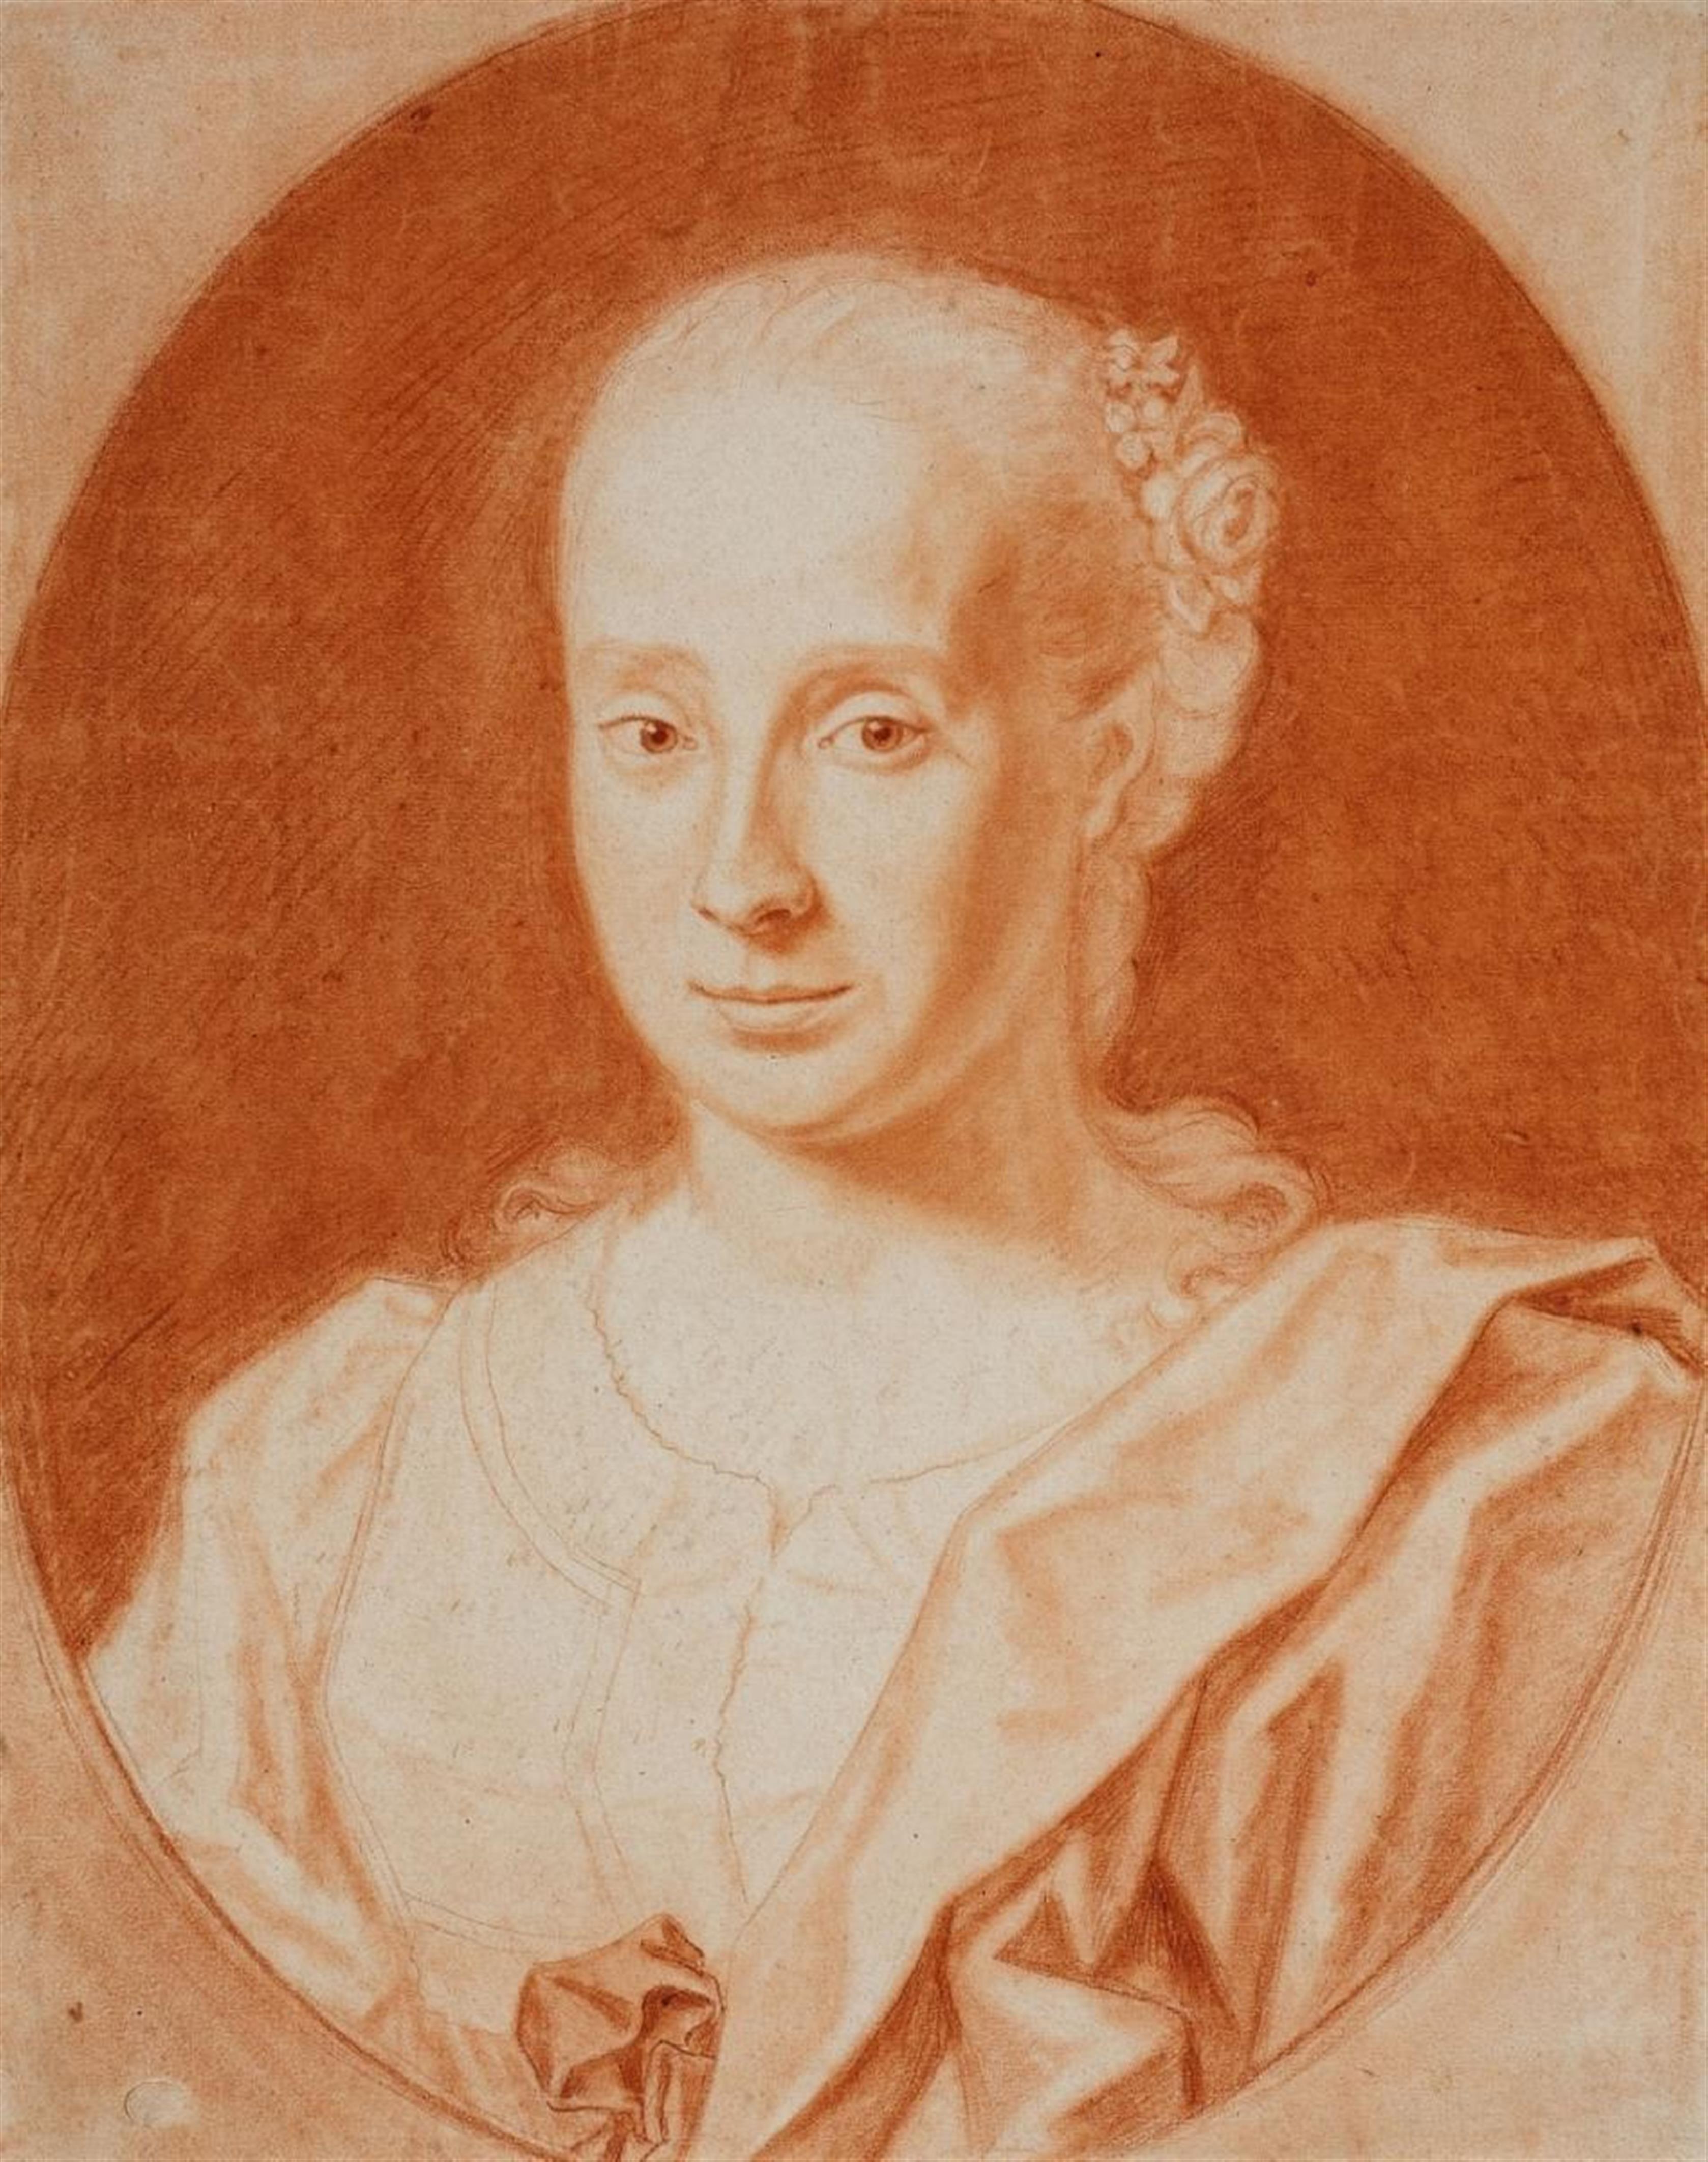 Johann Lorenz Haid - PORTRAIT GEORG PHILIPP RUGENDAS THE ELDER PORTRAIT ANNA BARBARA RUGENDAS - image-1